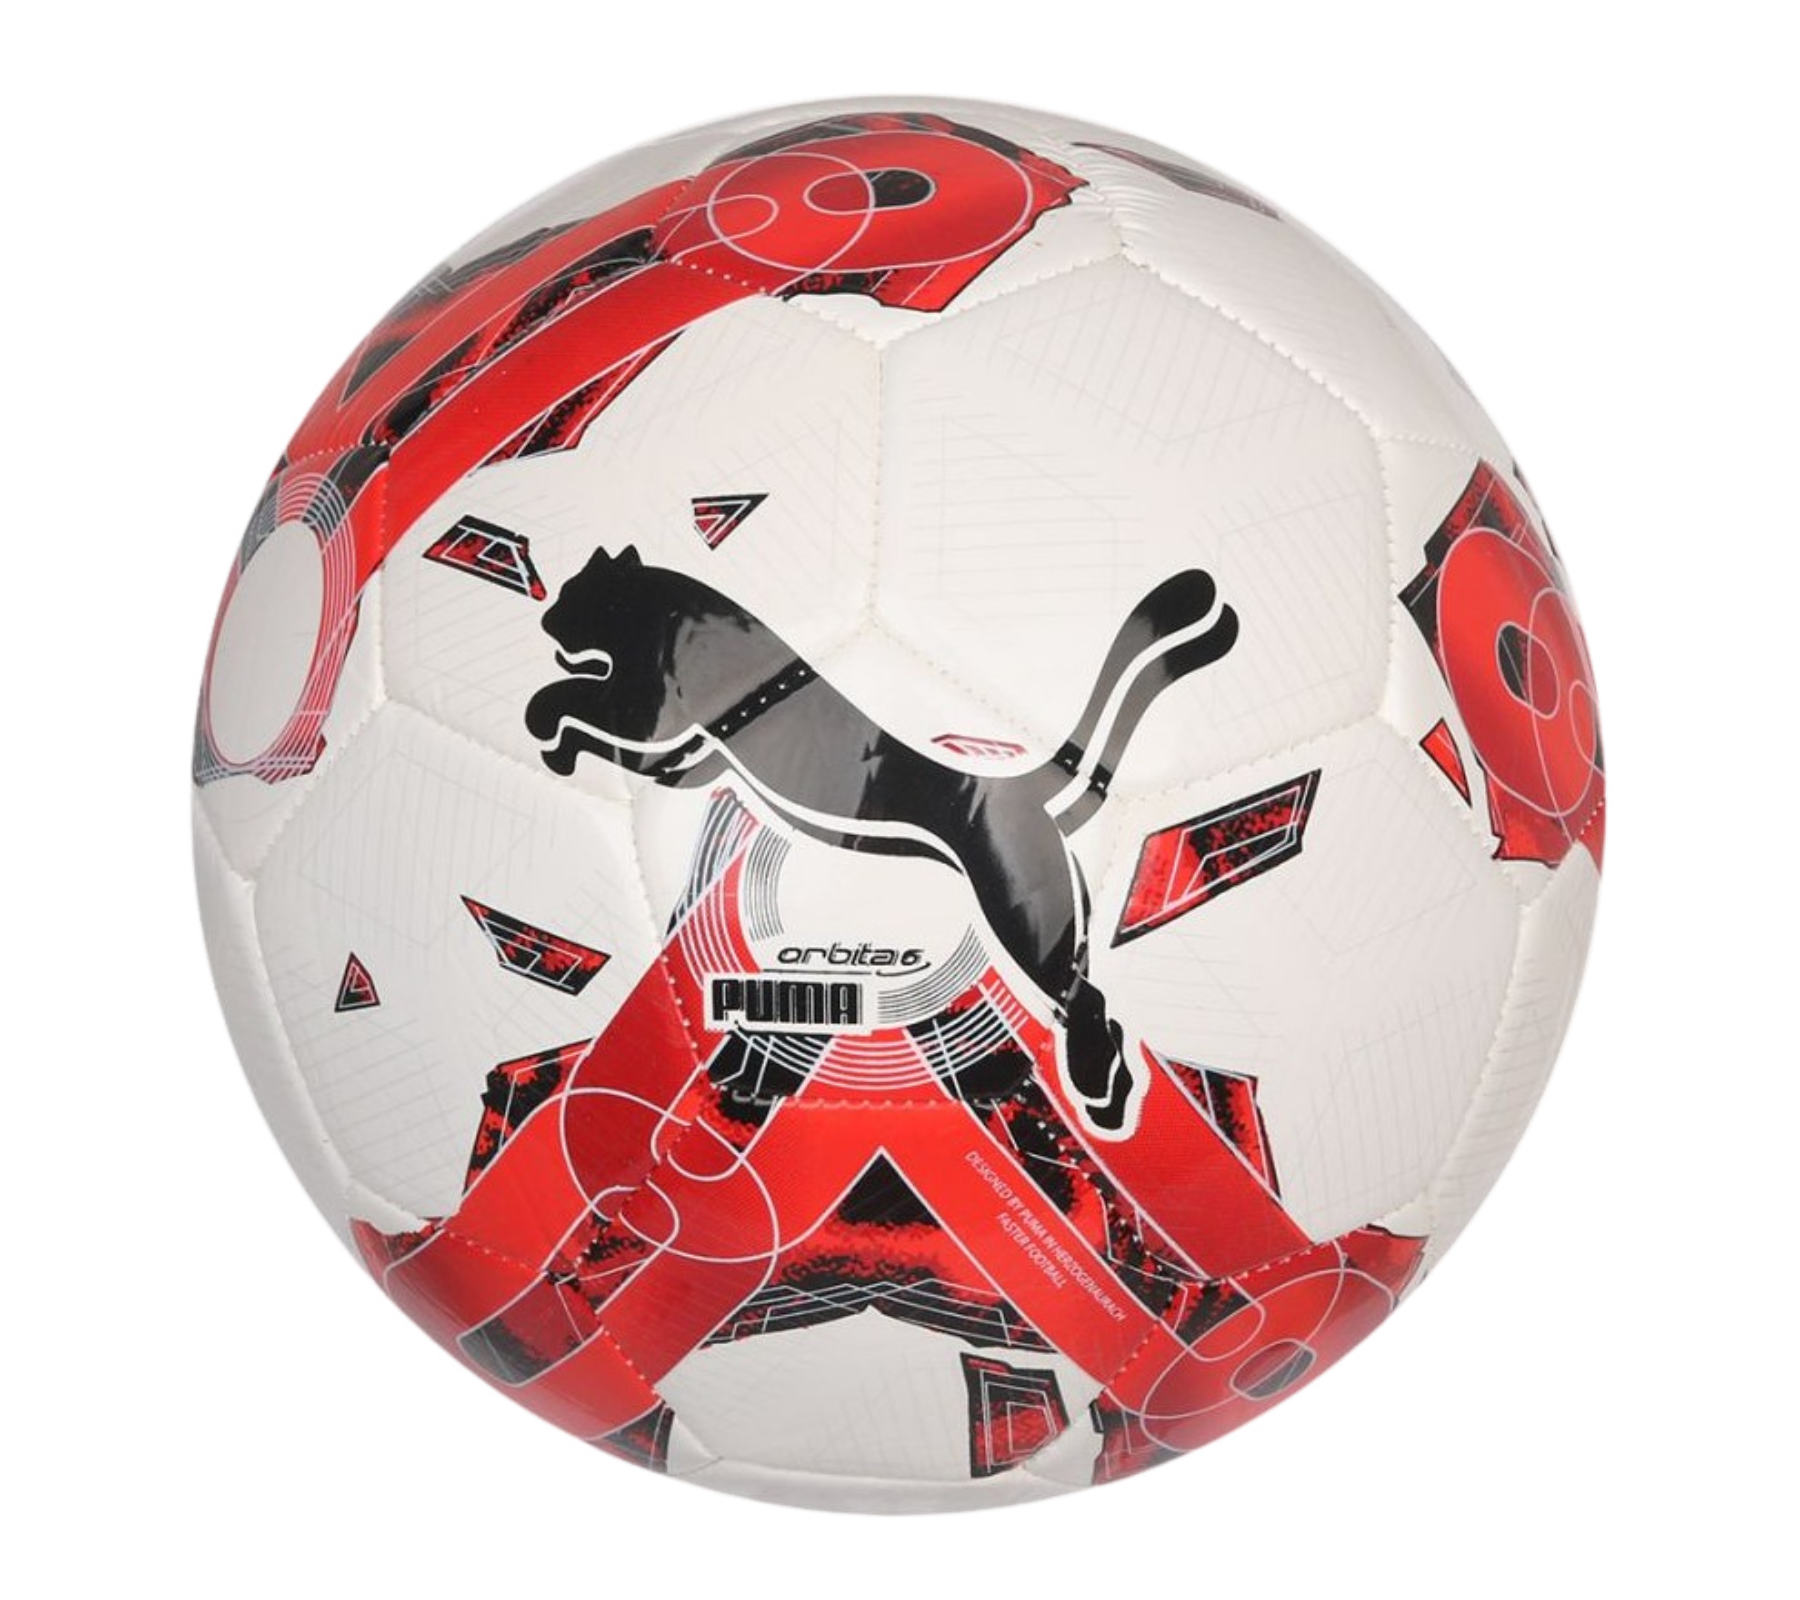 PUMA Orbita 6 MS Fußball Trainingsball mit Puma Air Lock-Ventil 083787 02 in Größe 3 oder 5 Weiß/Rot/Schwarz von PUMA